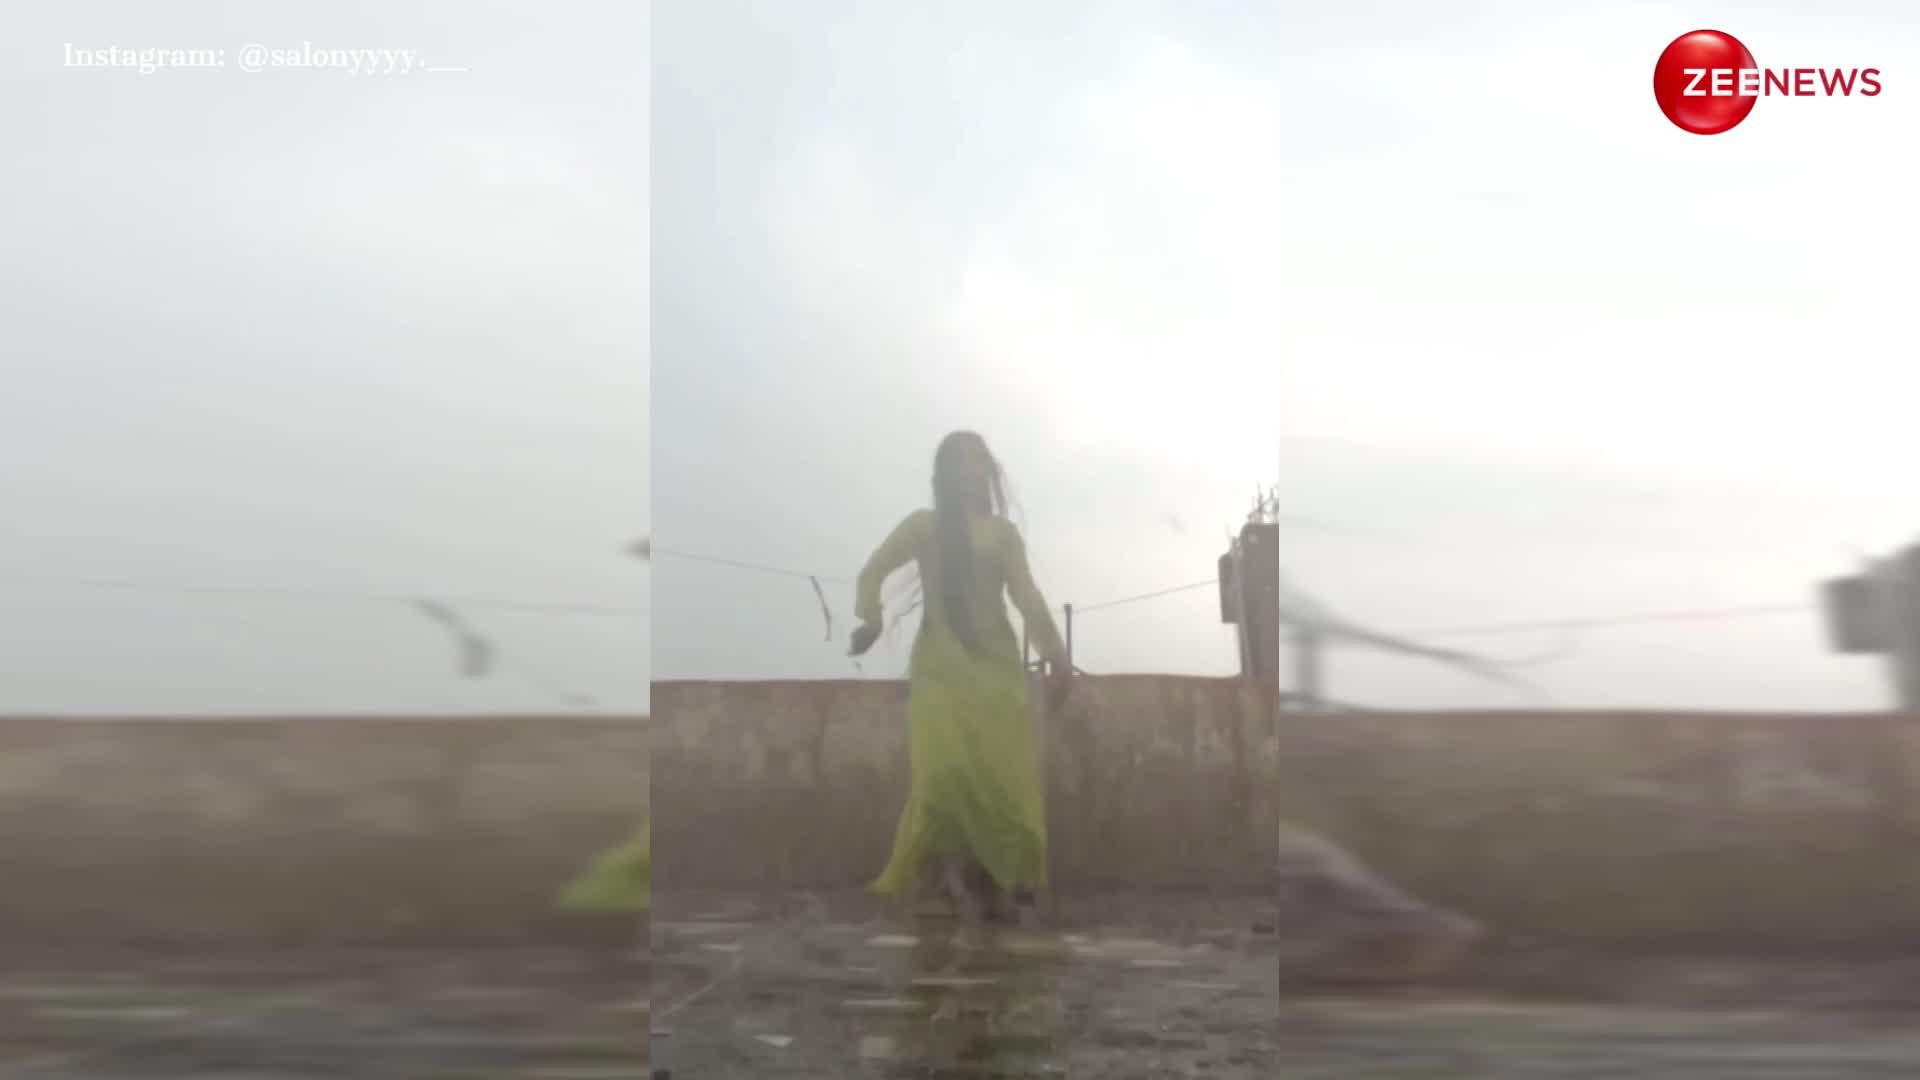 झमाझम बारिश में अनारकली सूट पहन Kajol के गाने 'तेरे नैना' पर लड़की ने किया जबरदस्त डांस, स्टेप्स देख खो गए लोग